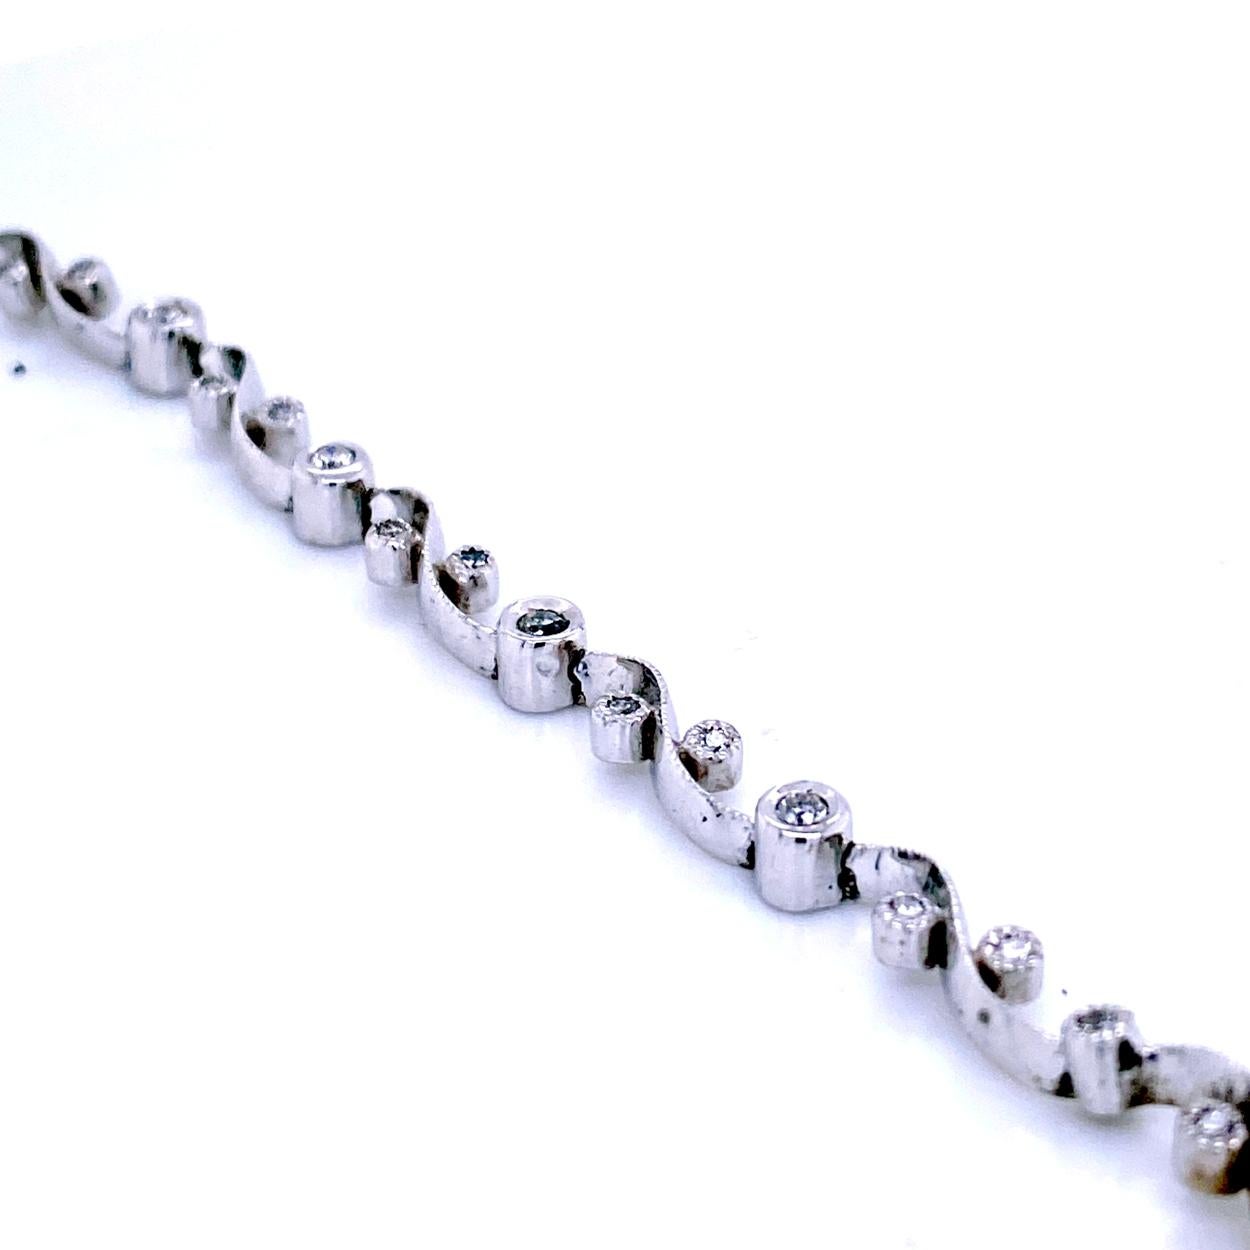 Ce bracelet en diamants est composé de 11 maillons sertis de diamants ronds brillants de 1.2 mm et de 5 diamants ronds brillants de 1.8 mm placés au centre entre les maillons pour présenter un aspect impressionnant. Le bracelet est fabriqué en or 18